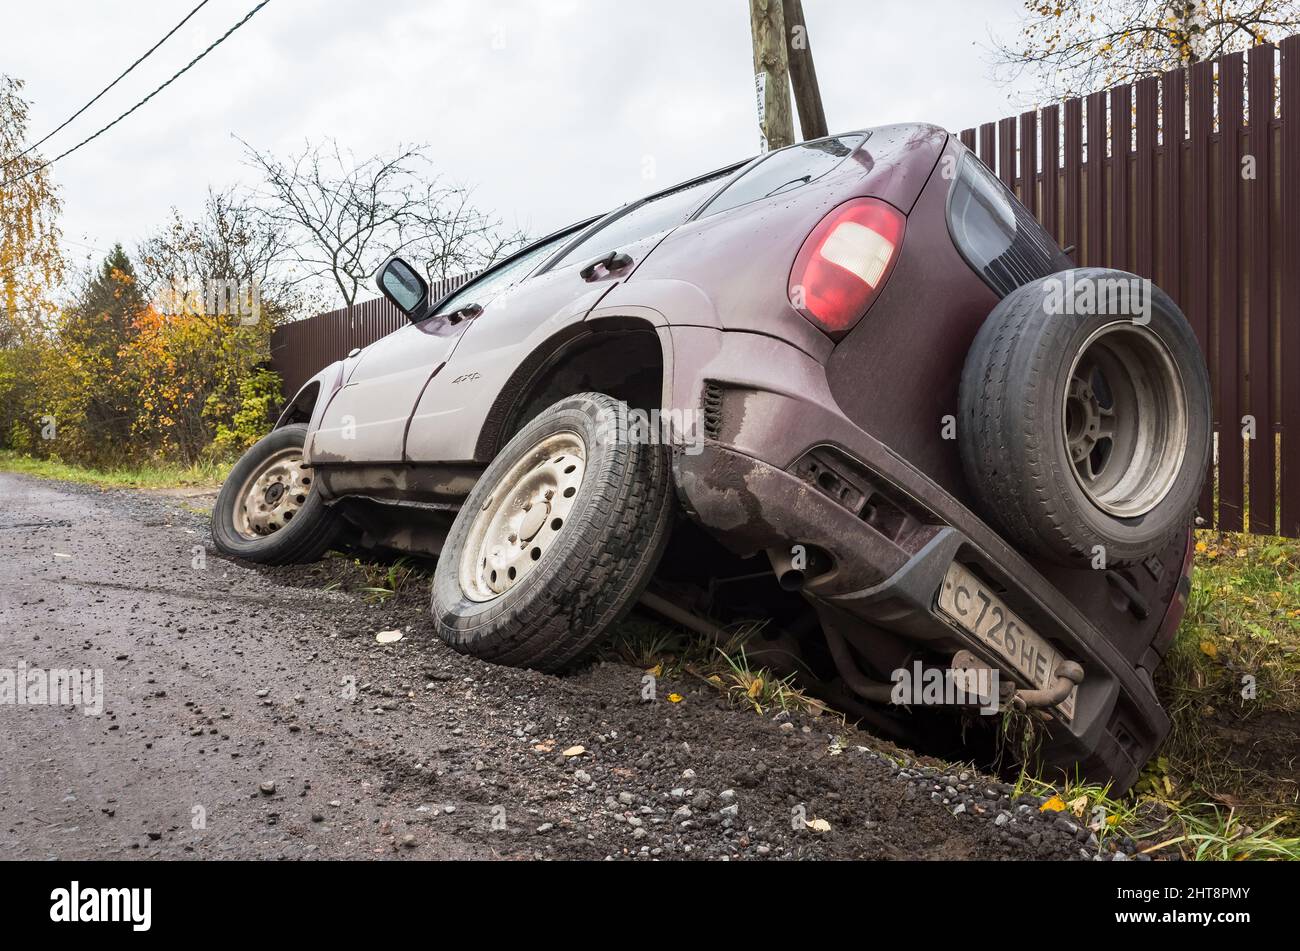 Leningrad Oblast, Russia - 19 ottobre 2019: Chevrolet Niva auto in un incidente si trova in un fossato da strada rurale di giorno, vista posteriore Foto Stock